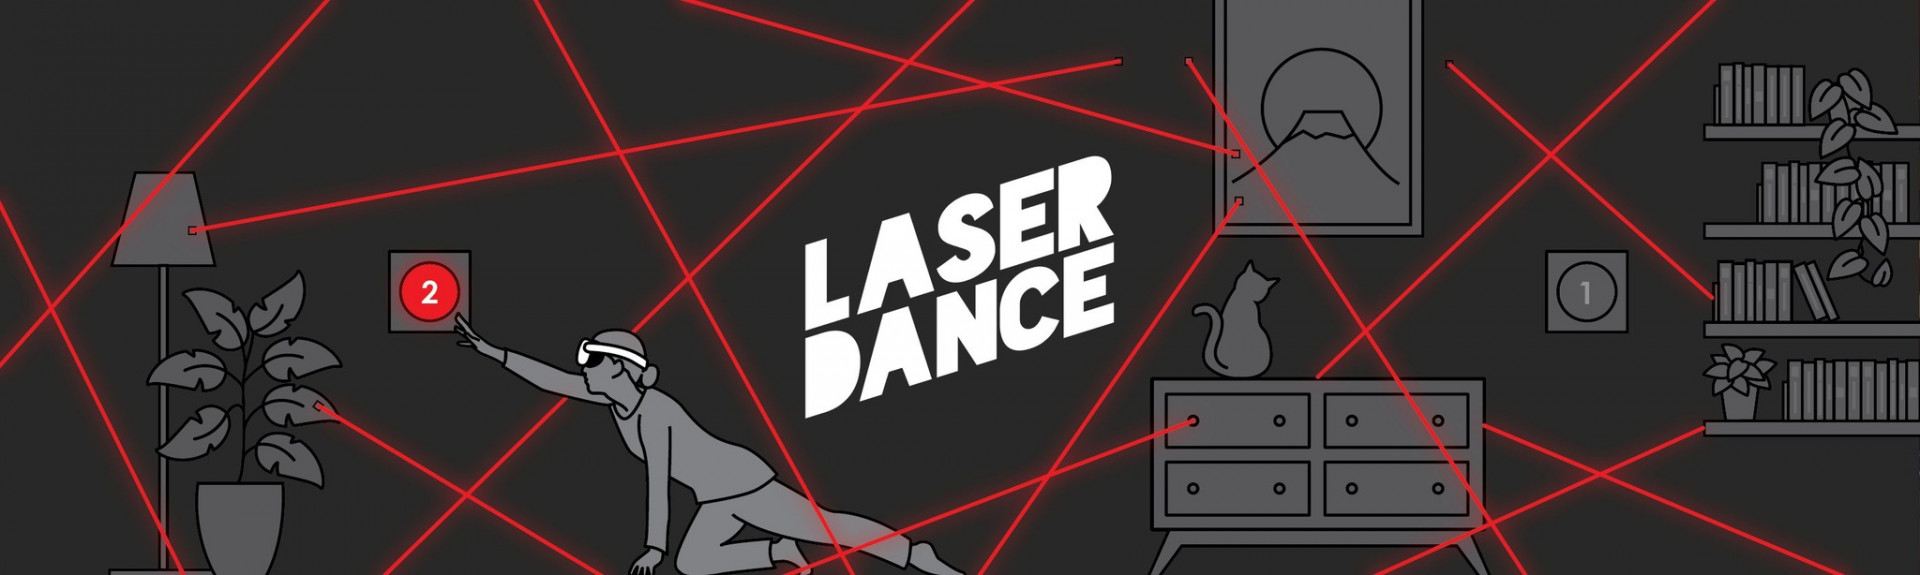 Laser Dance, convierte tu habitación en una trampa mortal